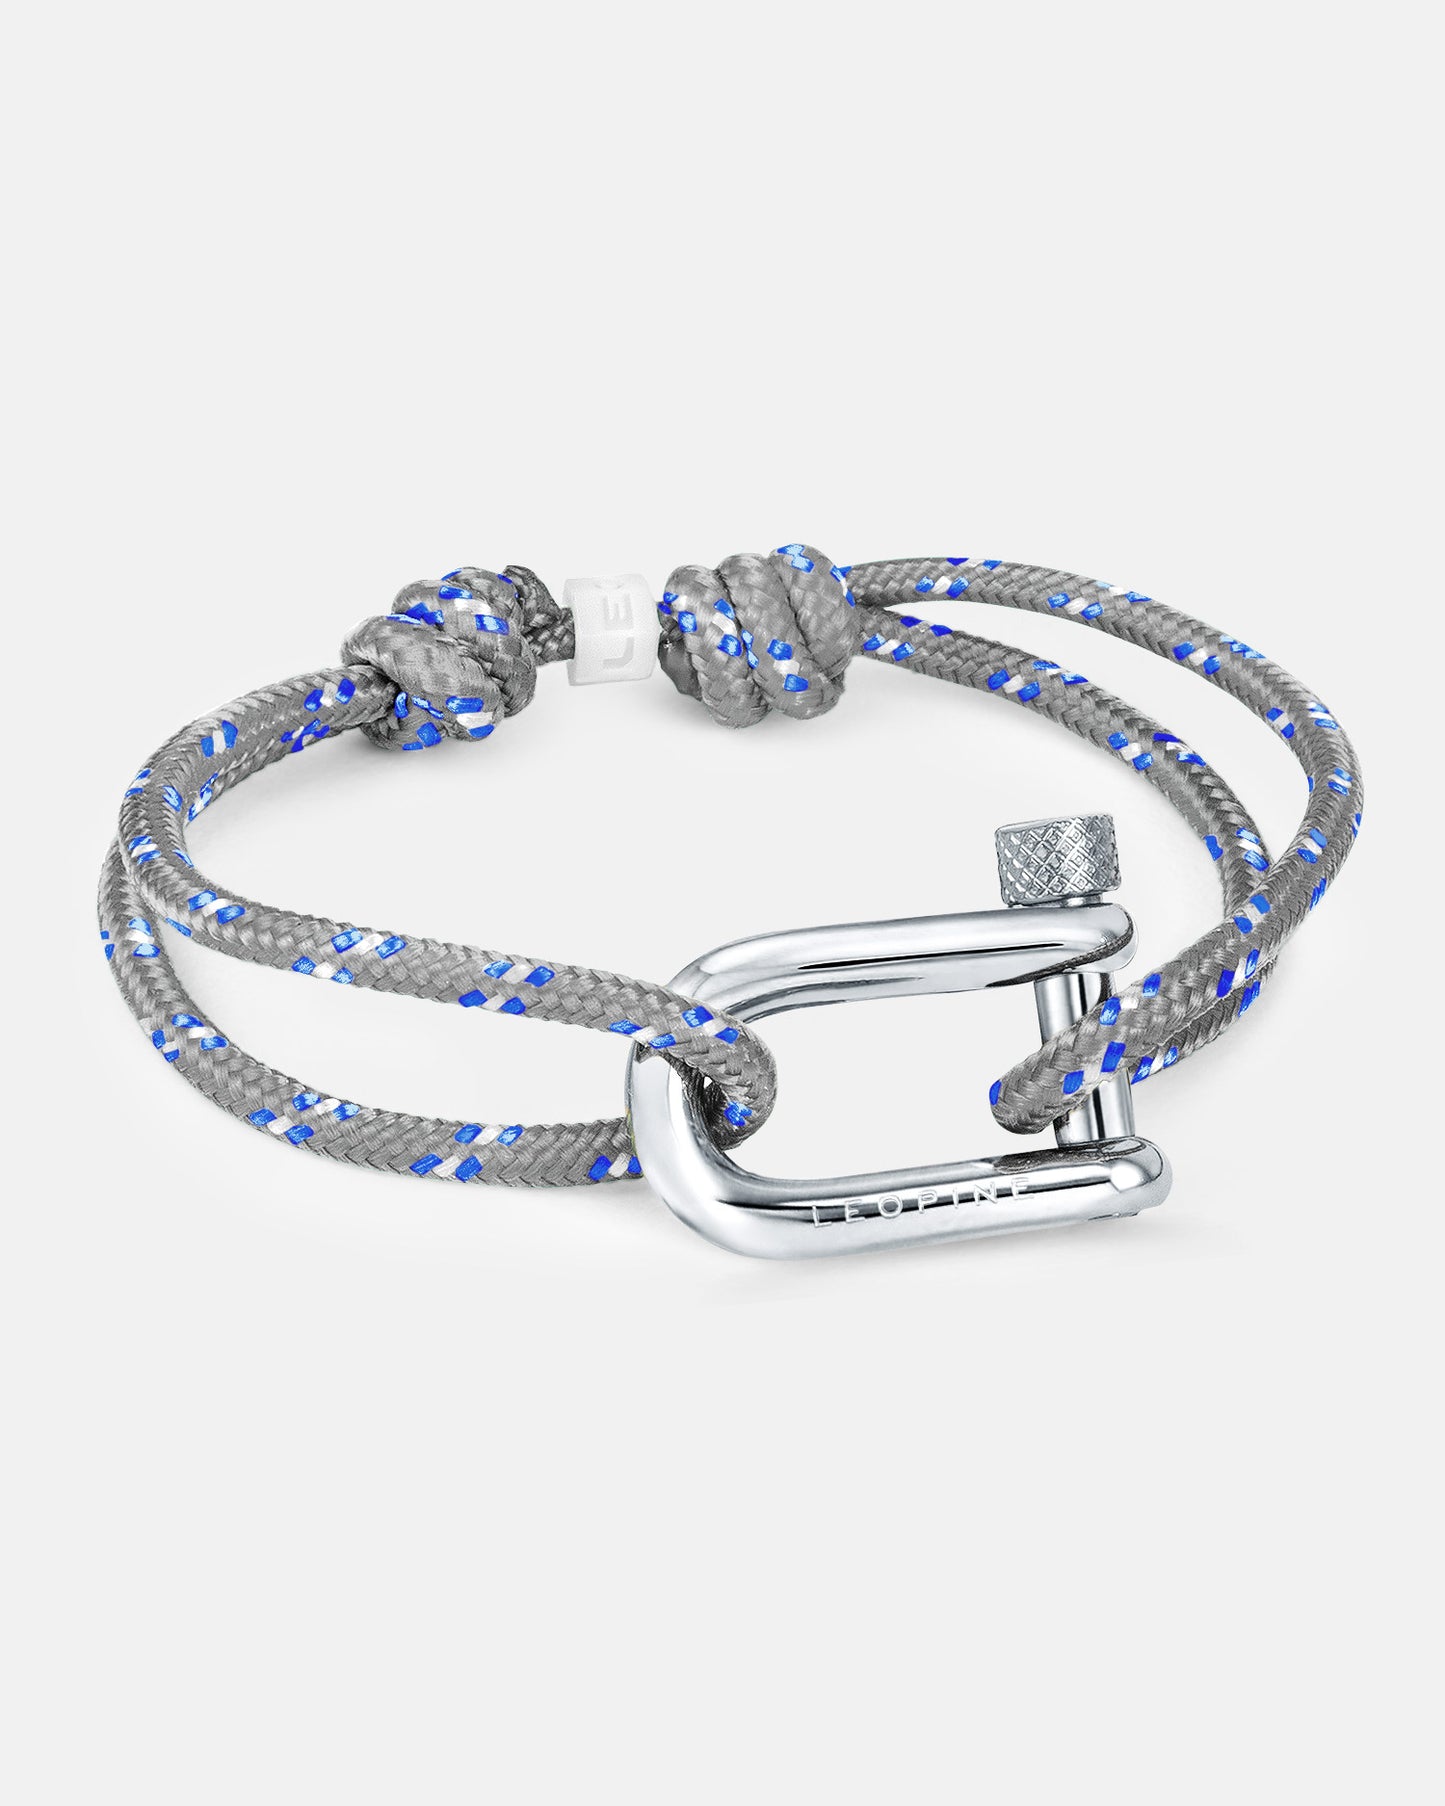 Leopine "U" Bracelet. Stainless Steel